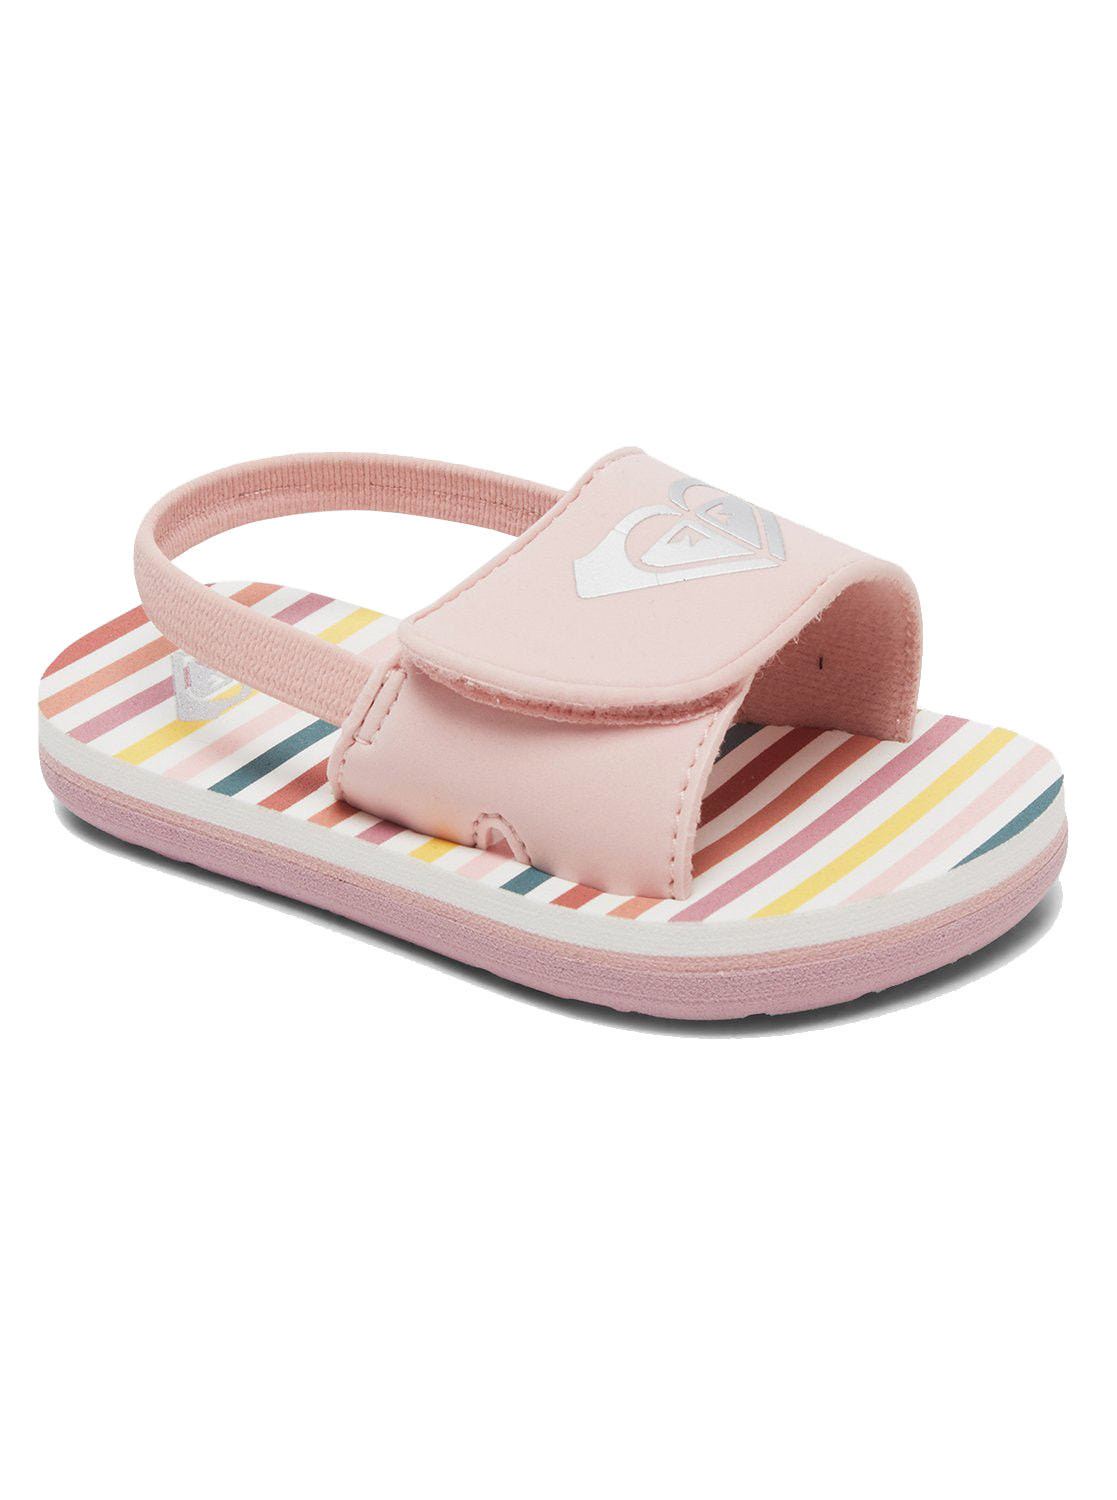 Roxy Finn Toddler Sandal PW0-Pink-White 10 C